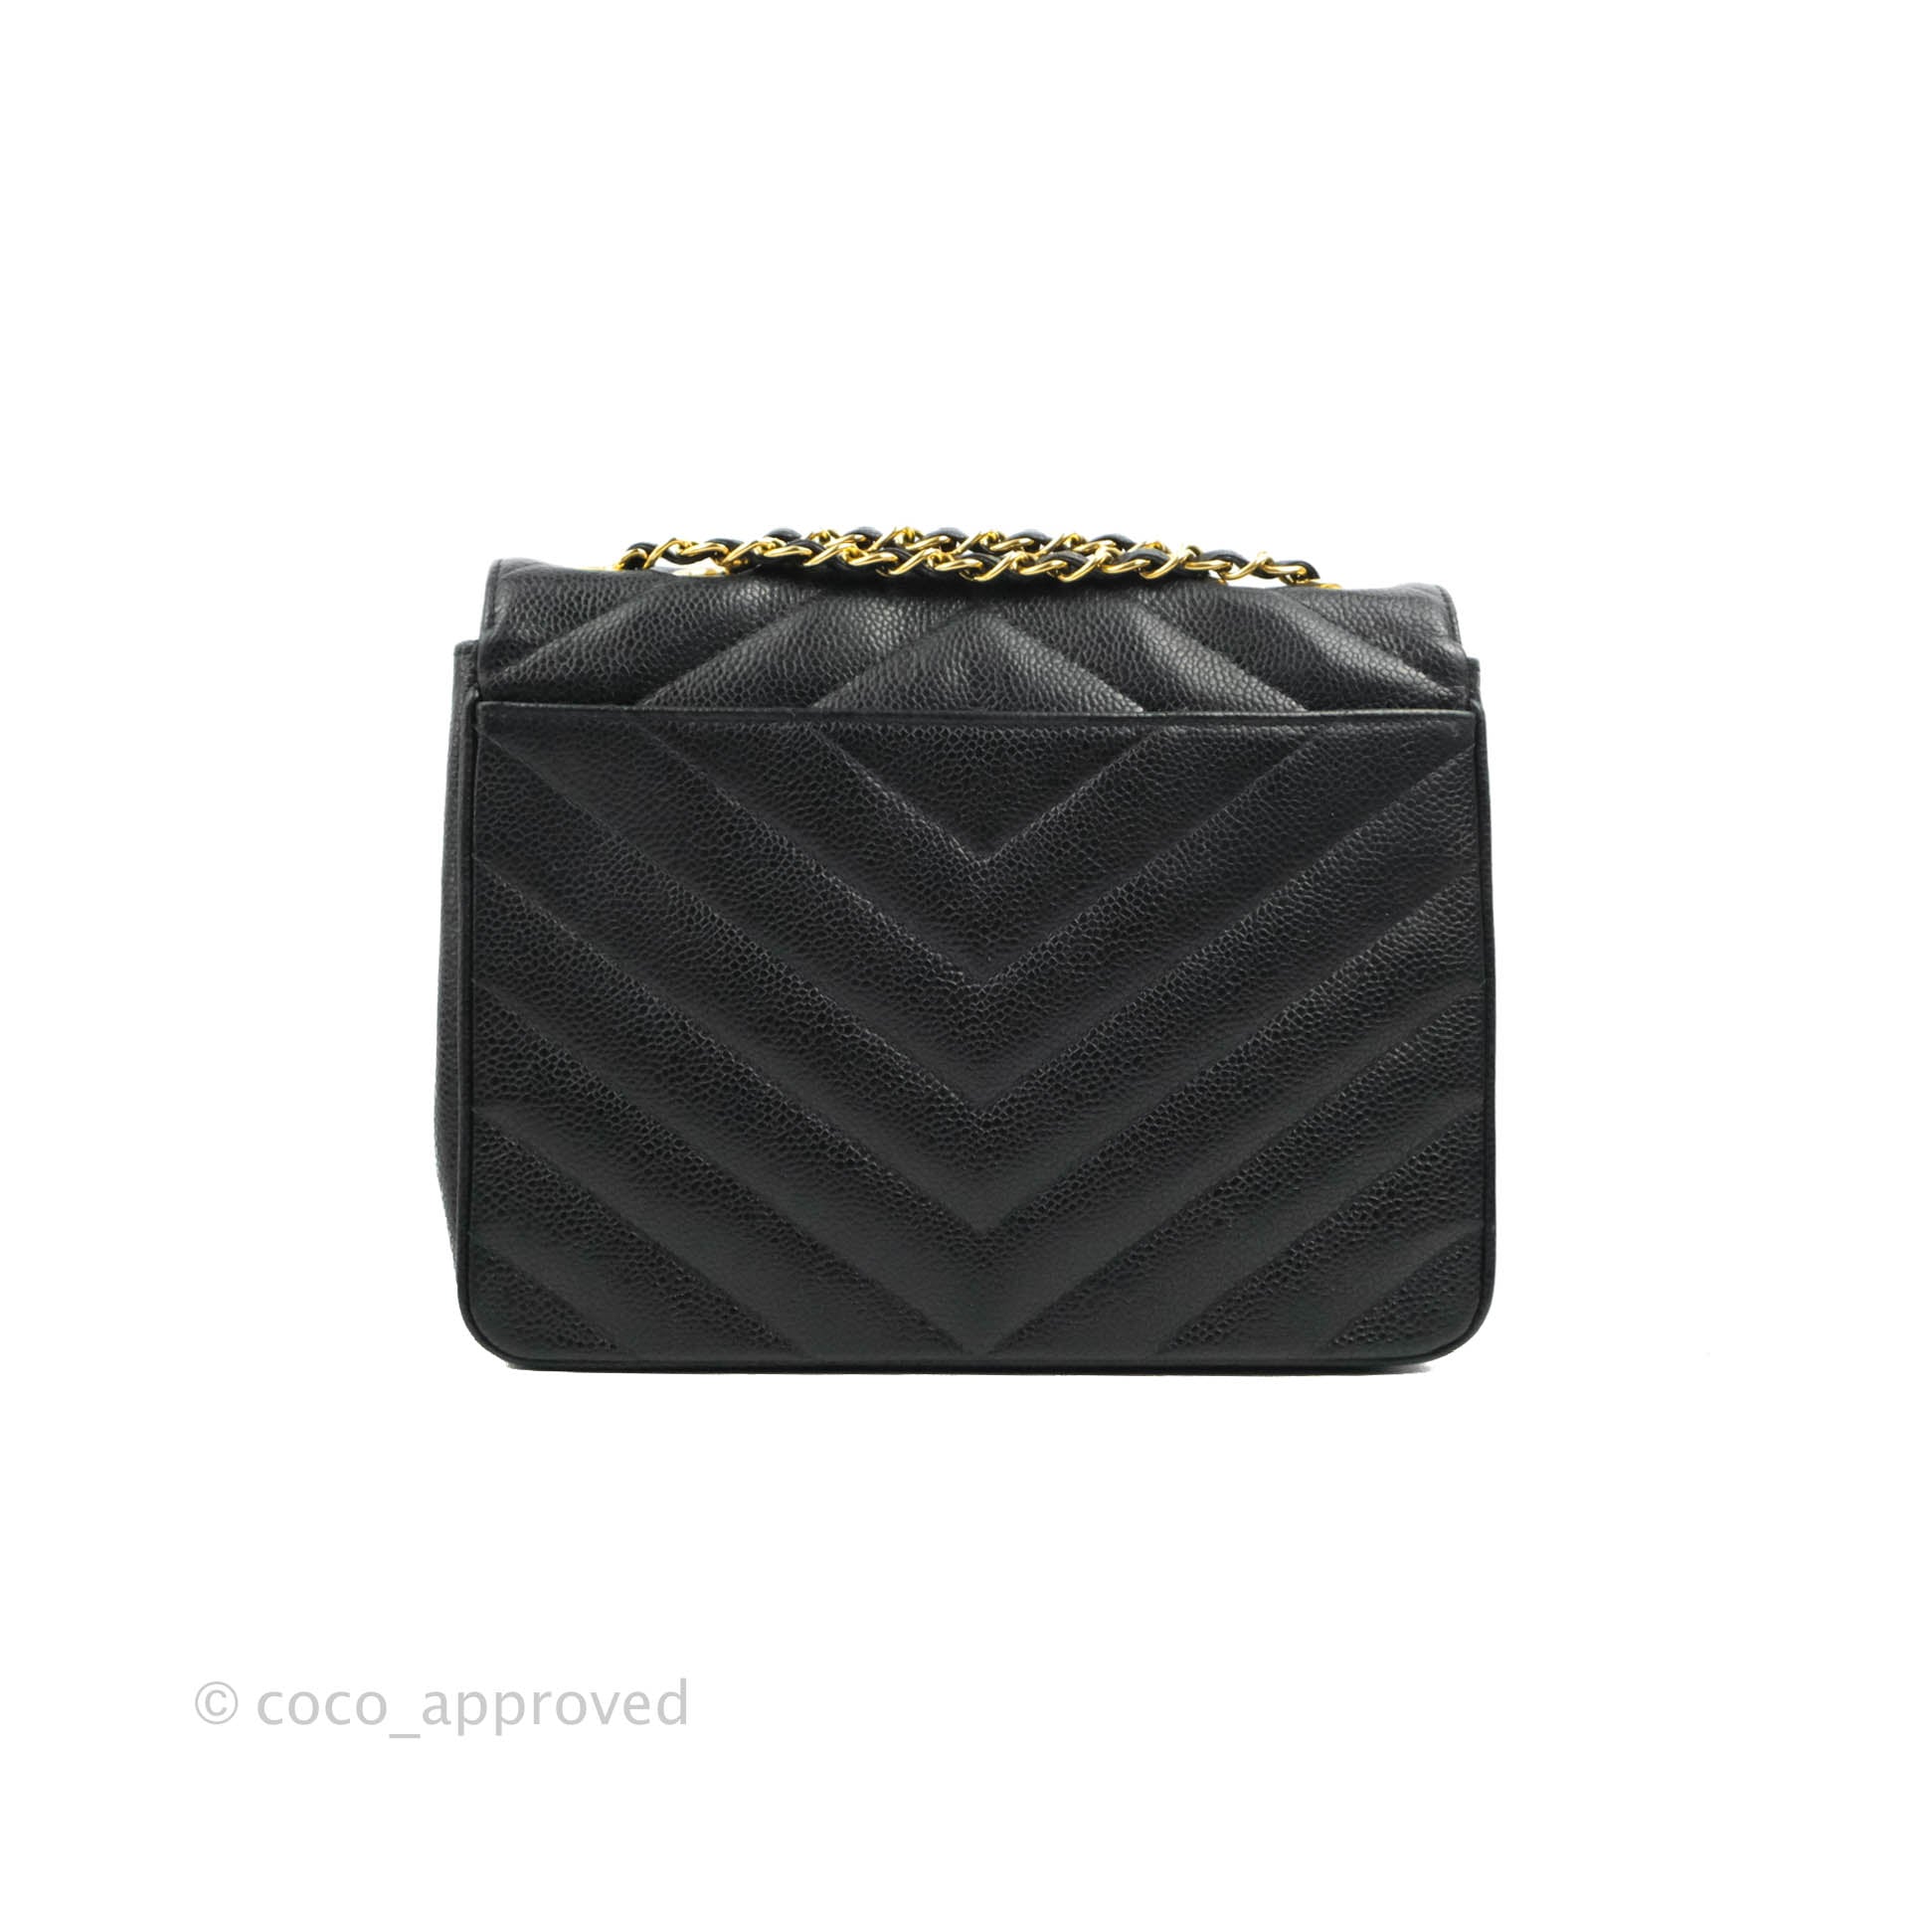 Chanel Black Caviar Chevron Envelope Flap Bag